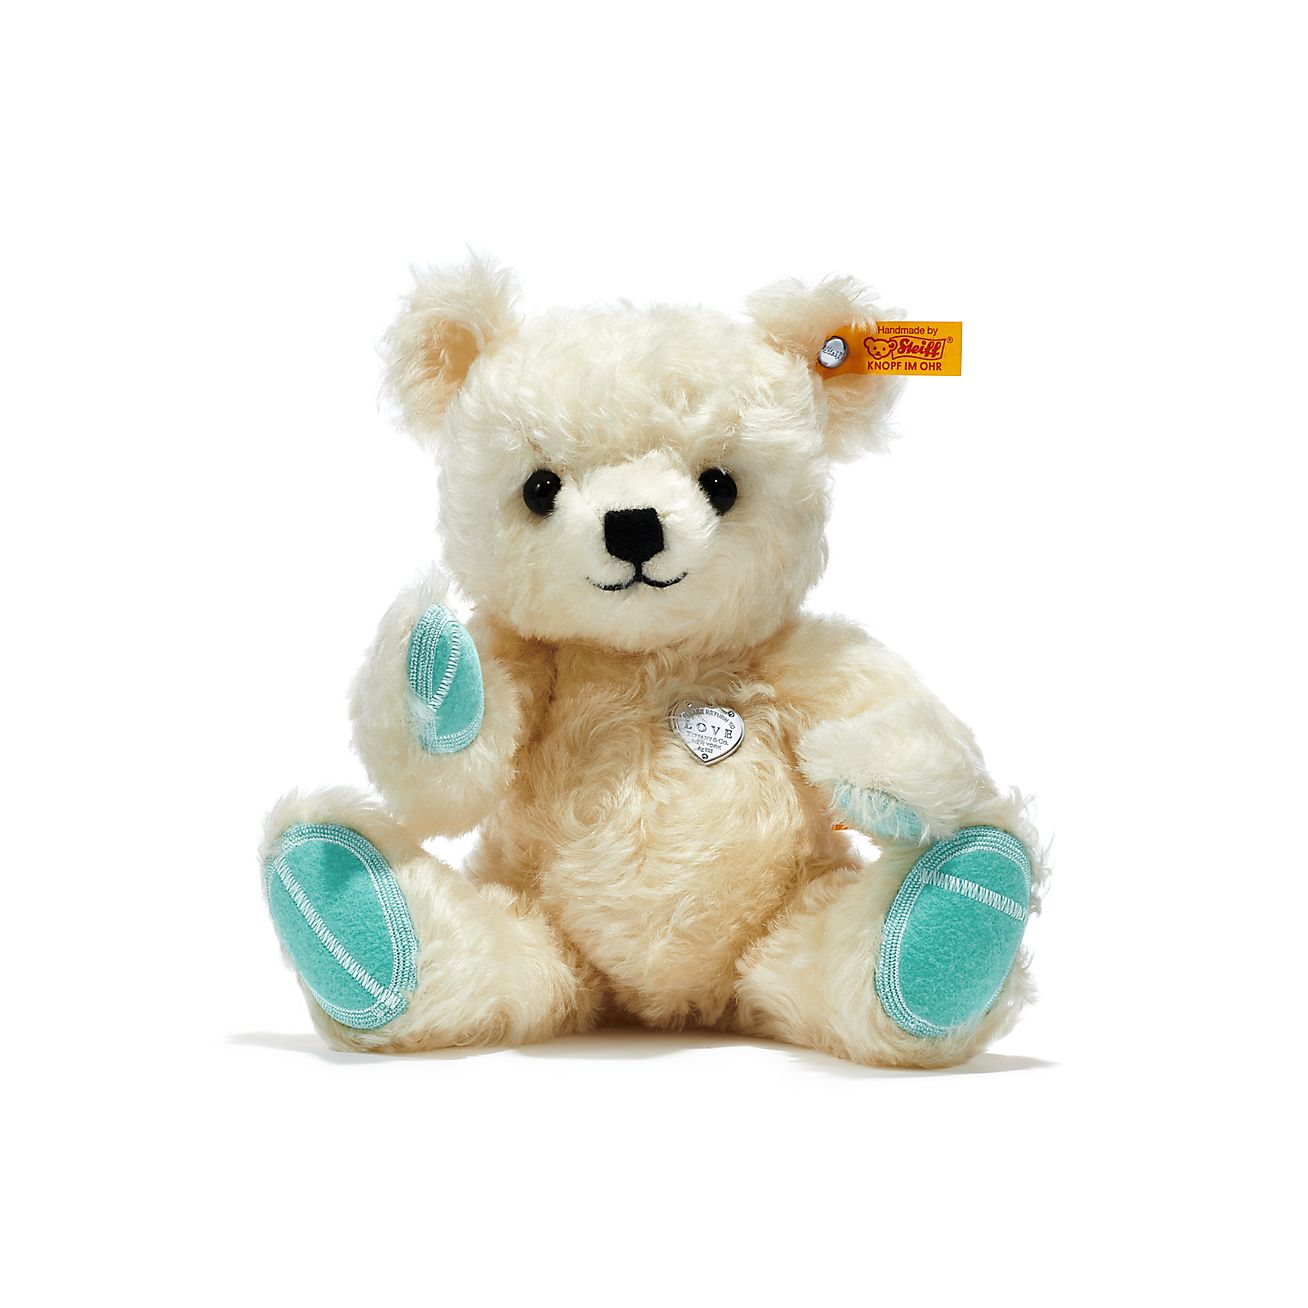 Tiffany™ Love holiday teddy bear 